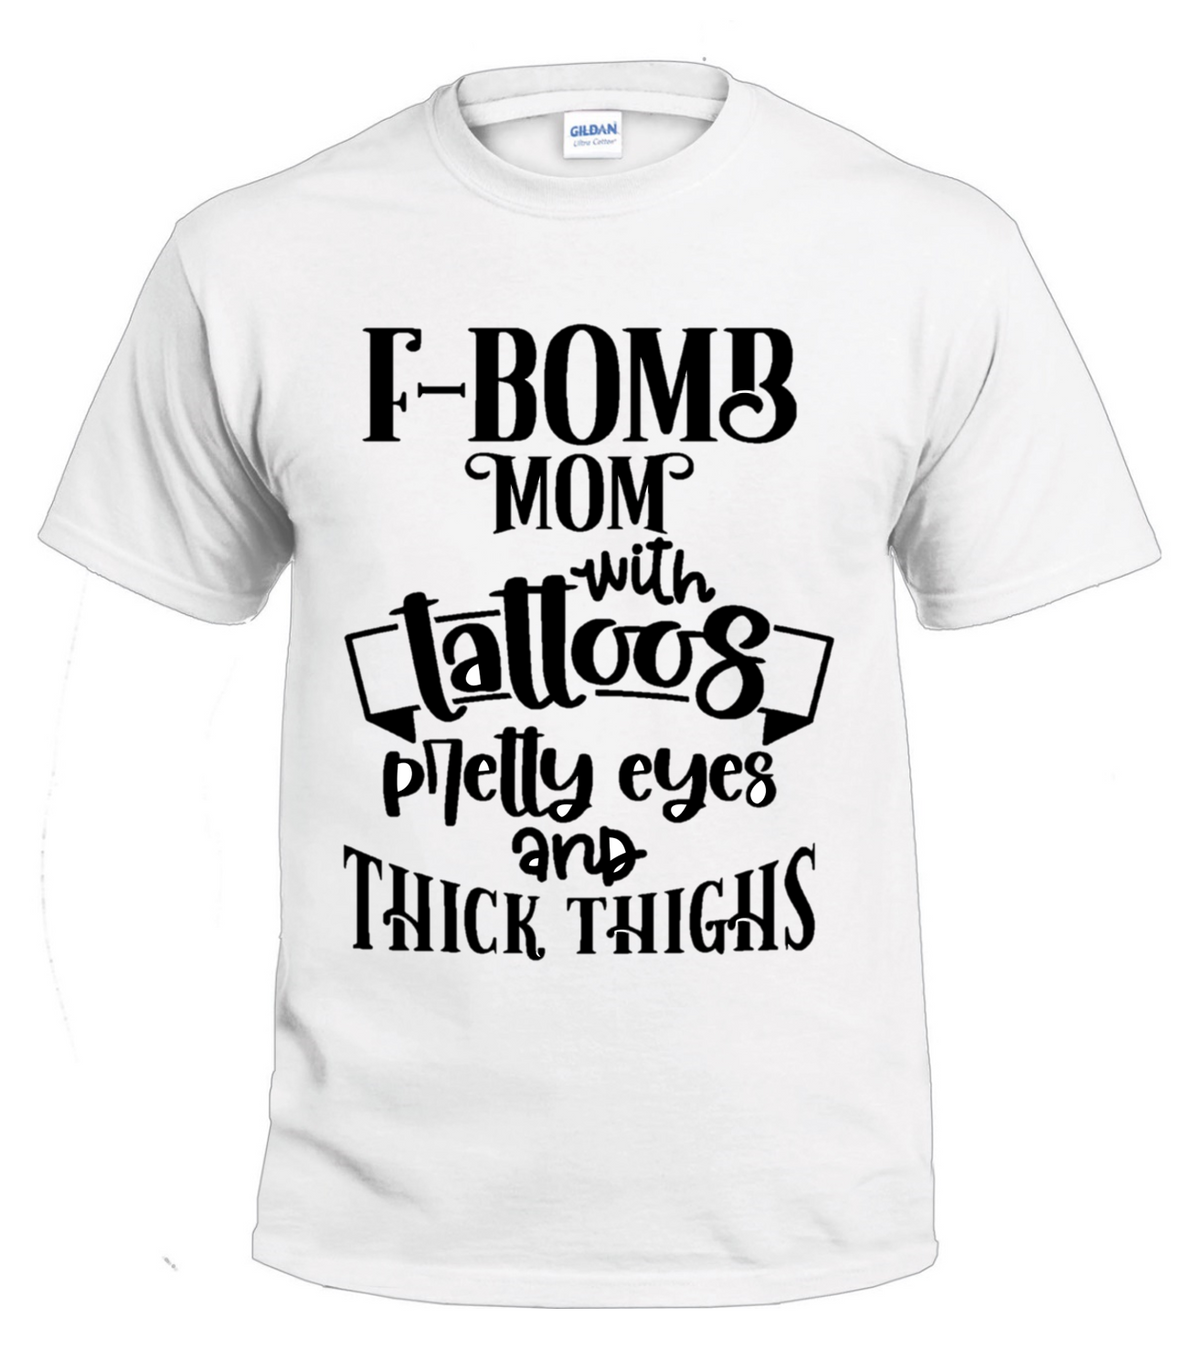 F-bomb Mom #1 t-shirt